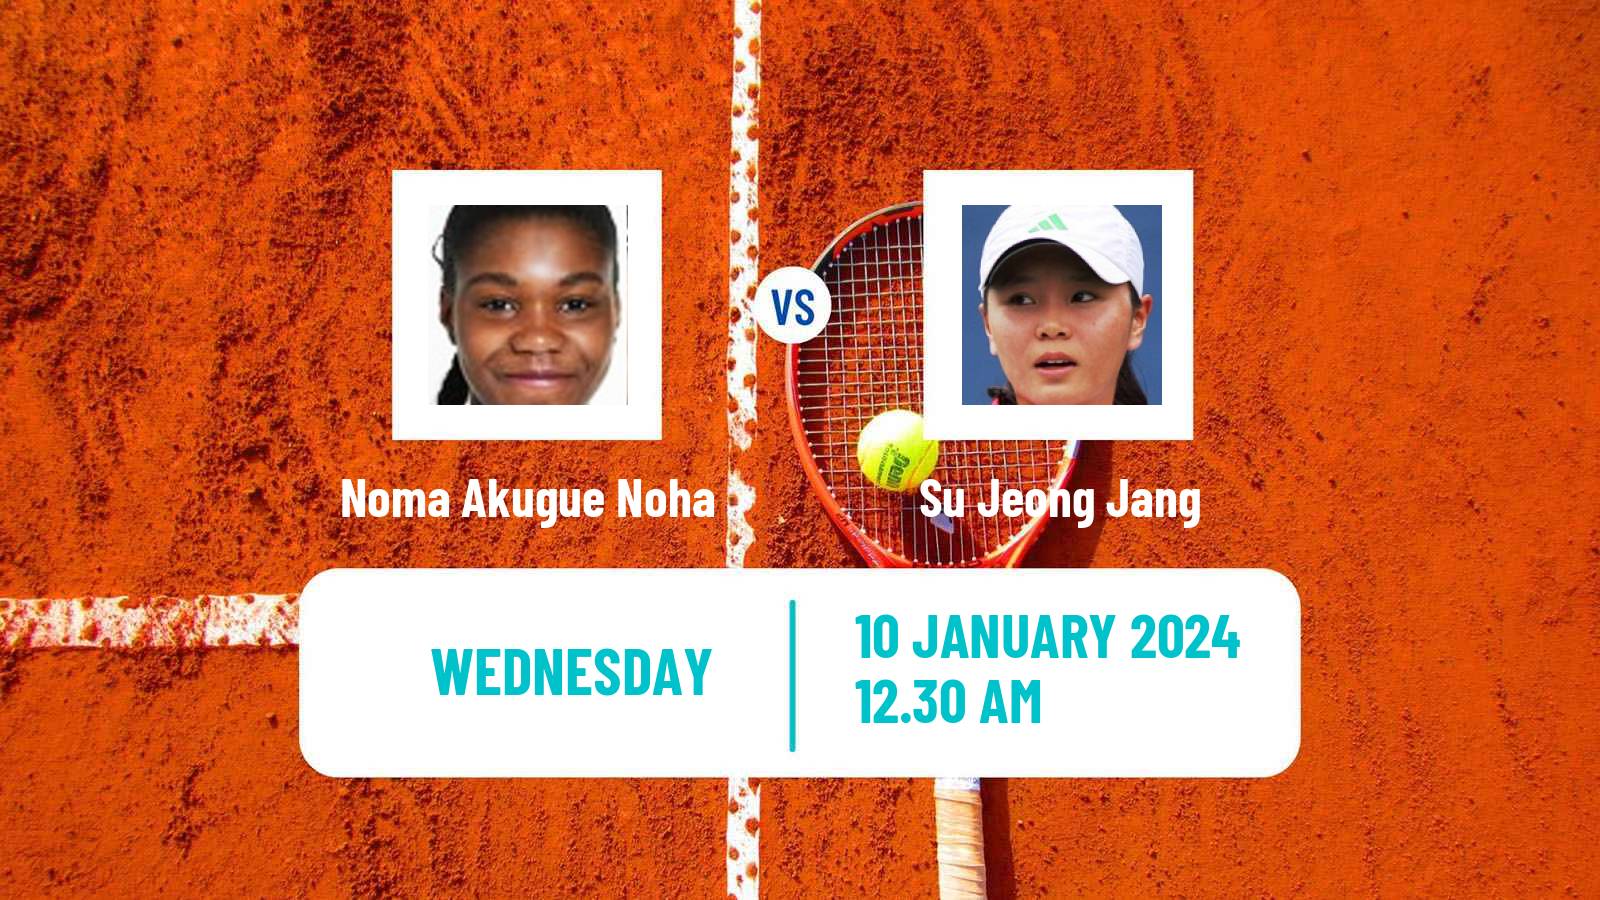 Tennis WTA Australian Open Noma Akugue Noha - Su Jeong Jang